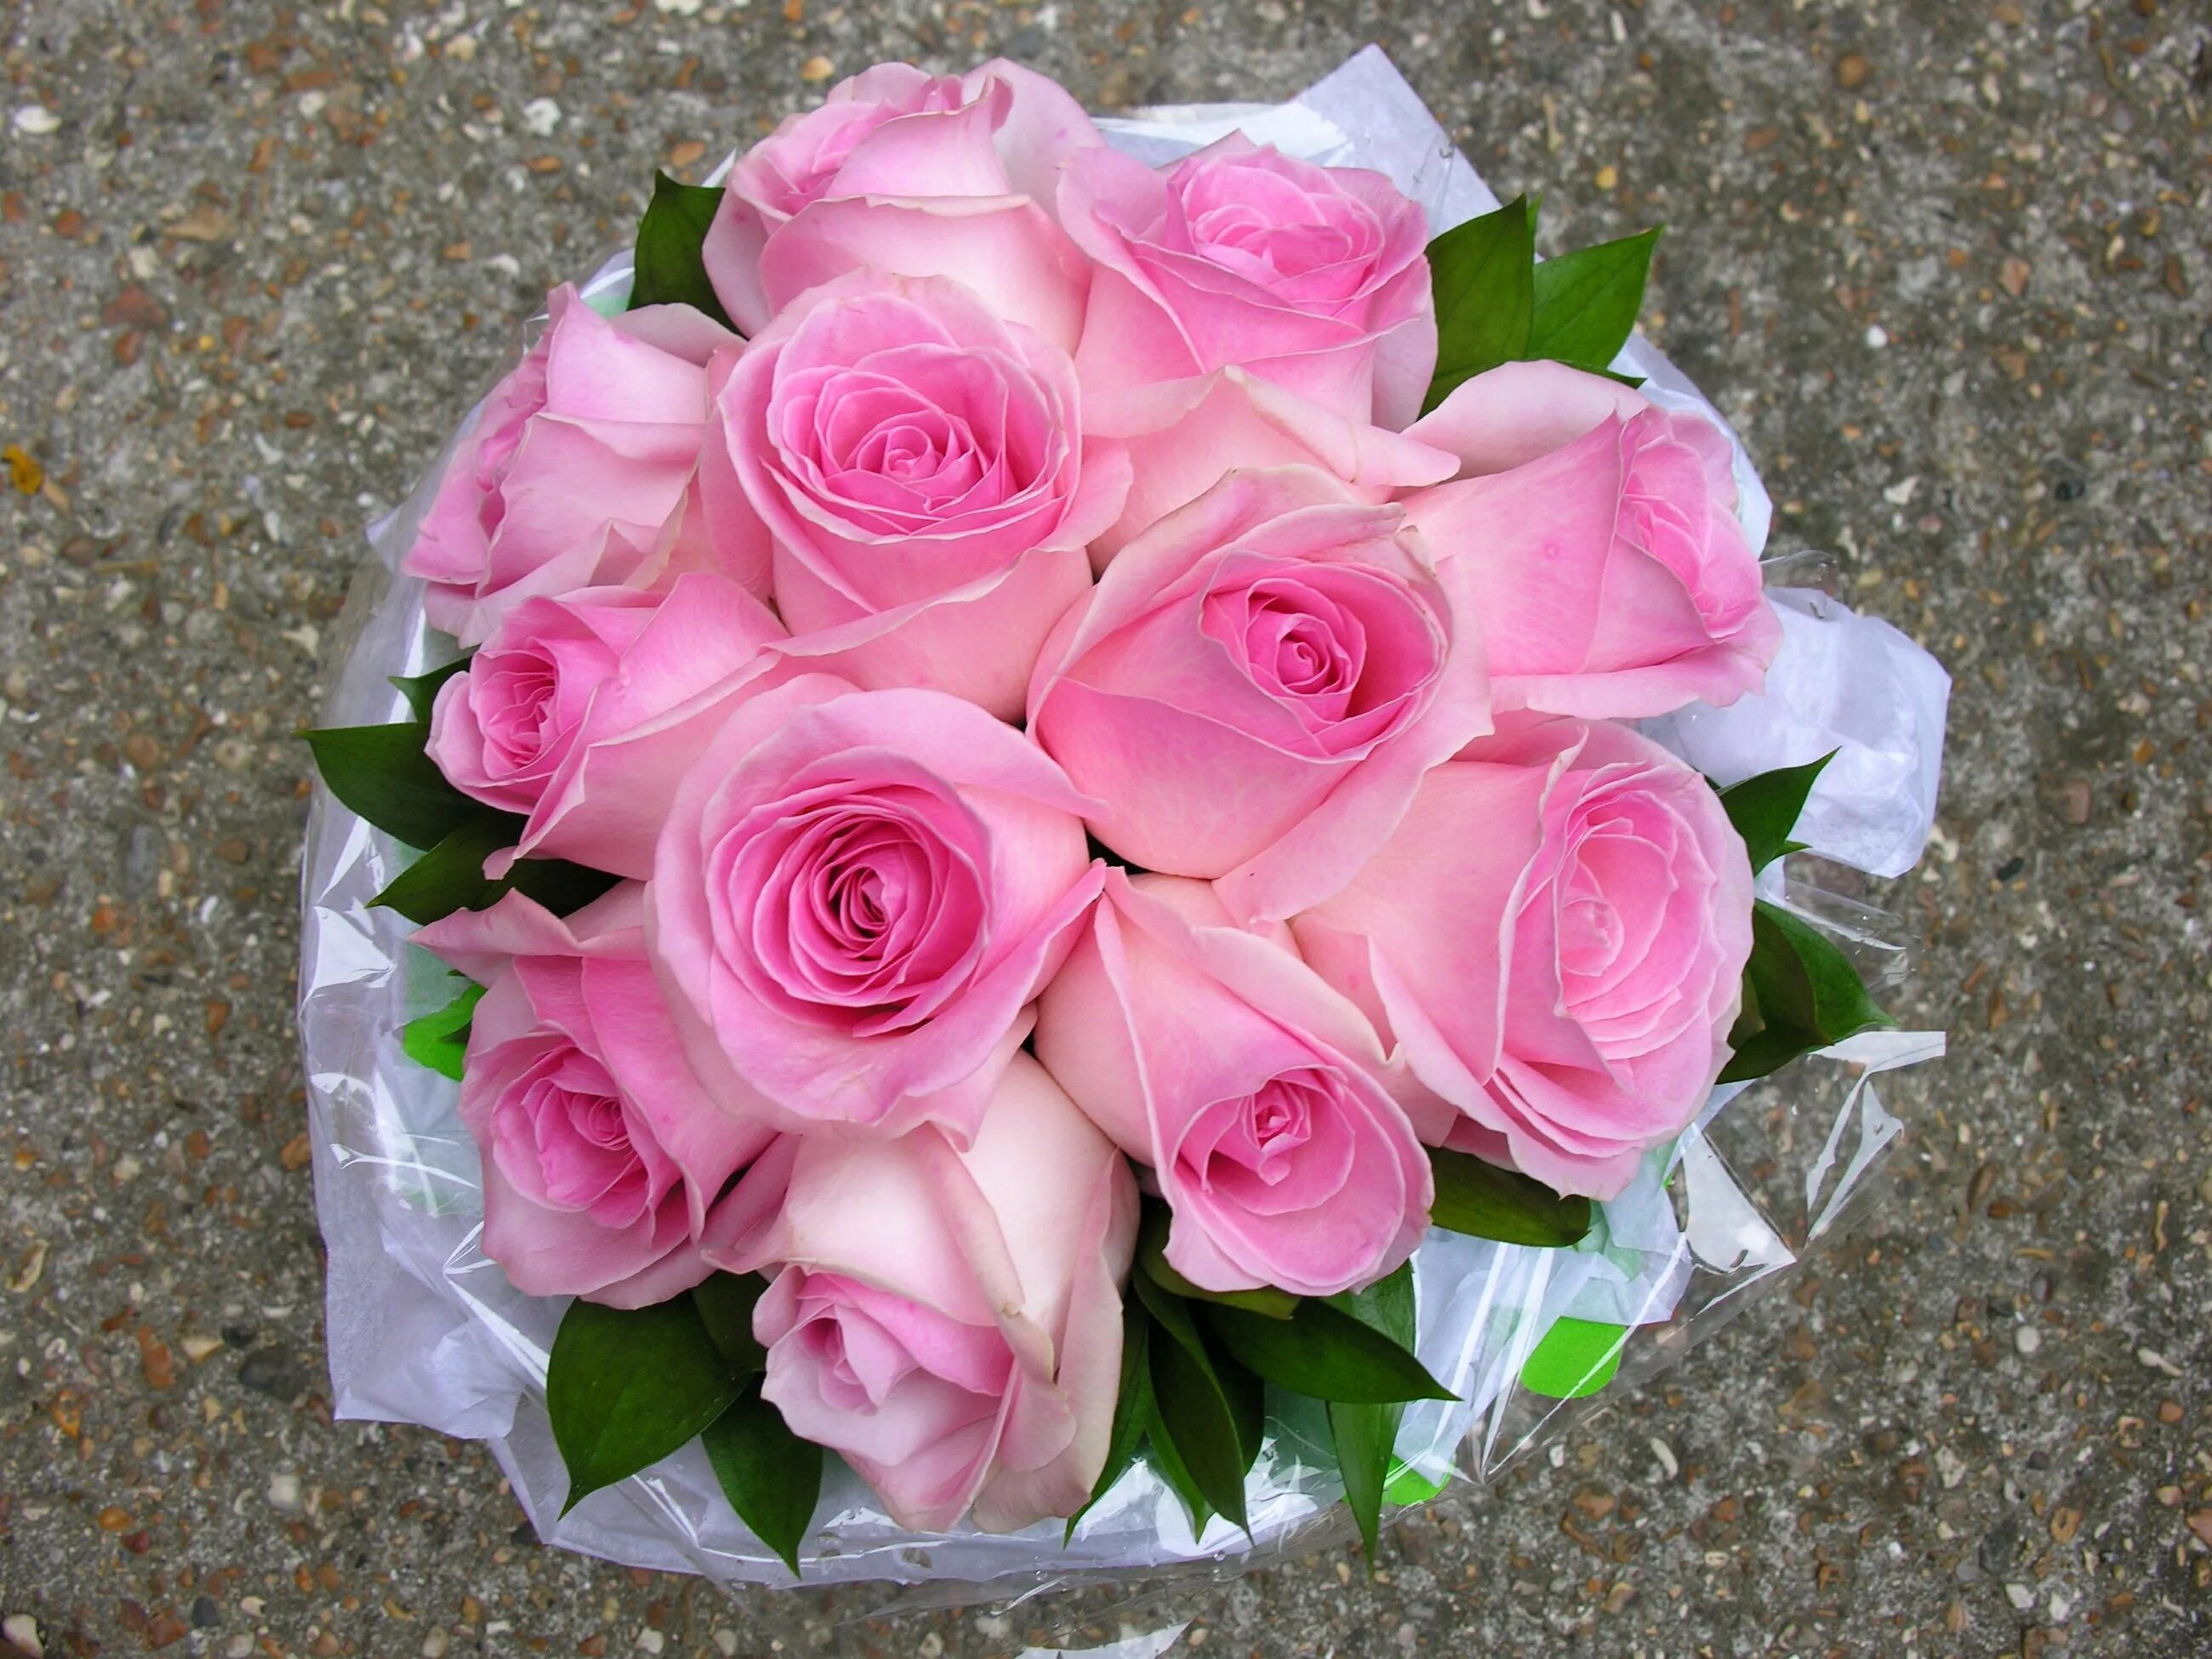 Roz. Красивый букет. Шикарный букет цветов. Красивый букет роз.